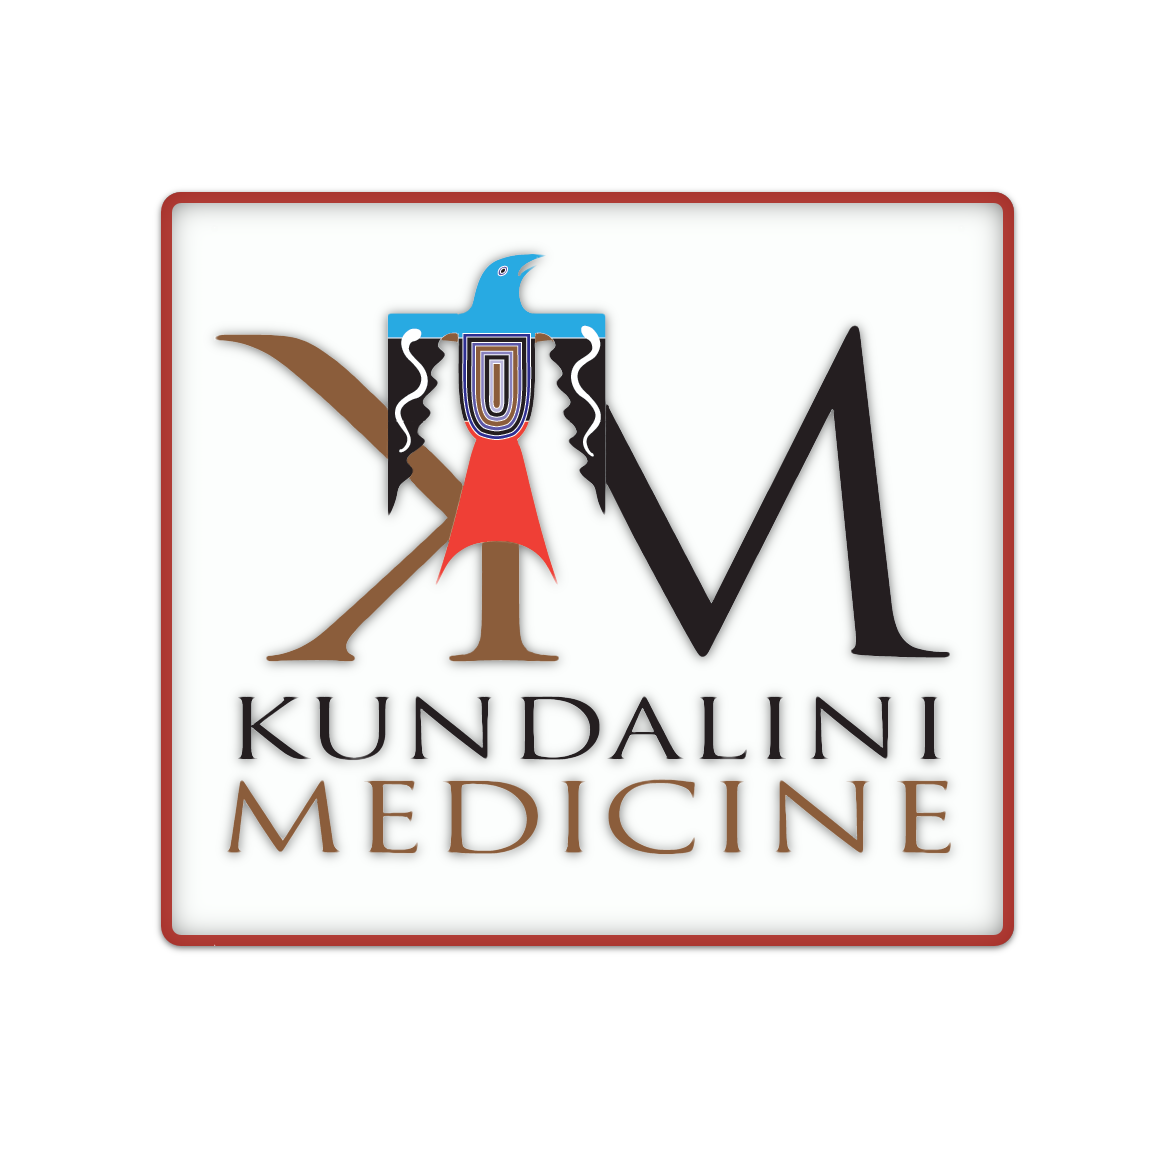 Kundalini Medicine